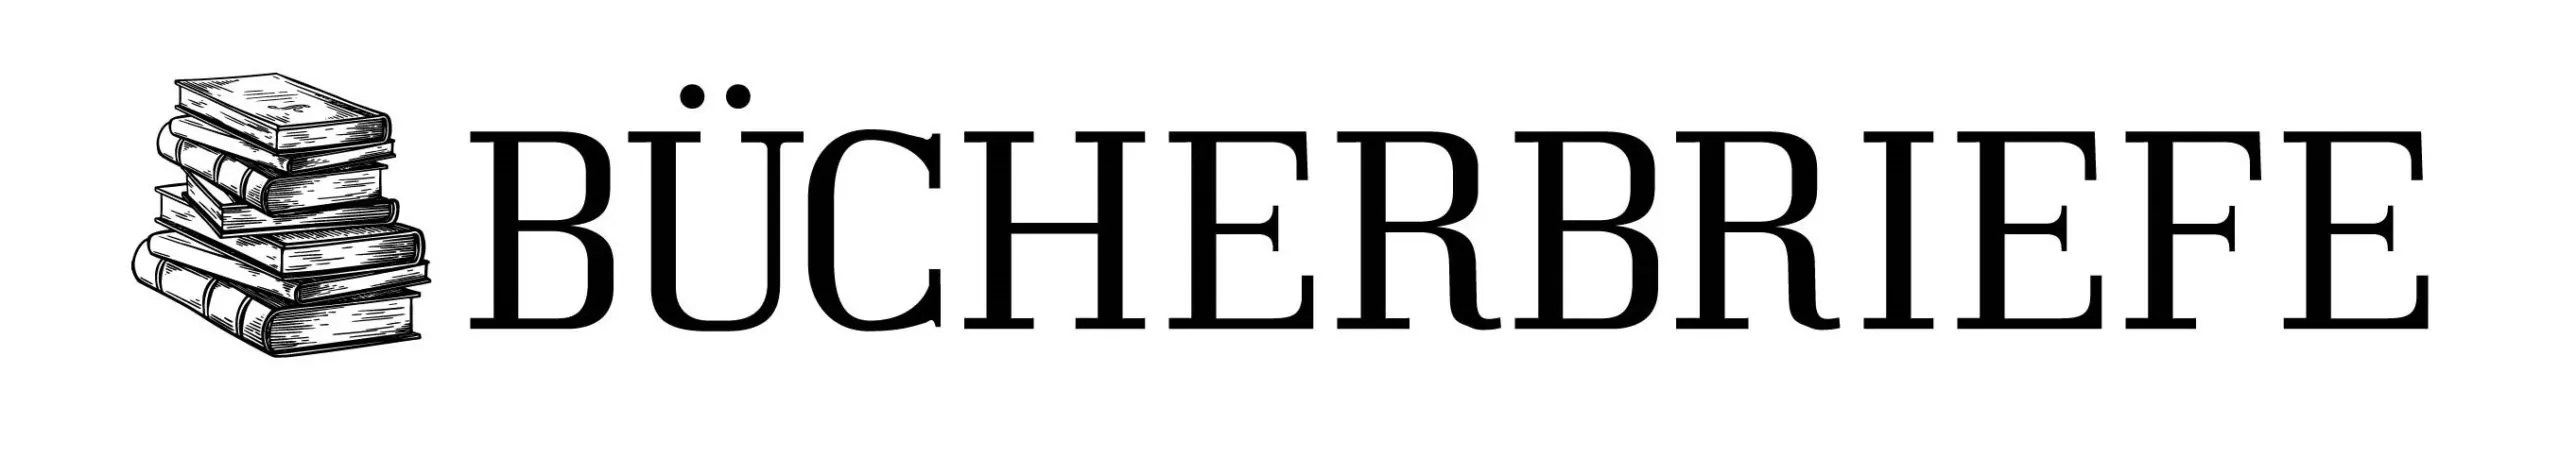 Das Logo für bucherbriefe.